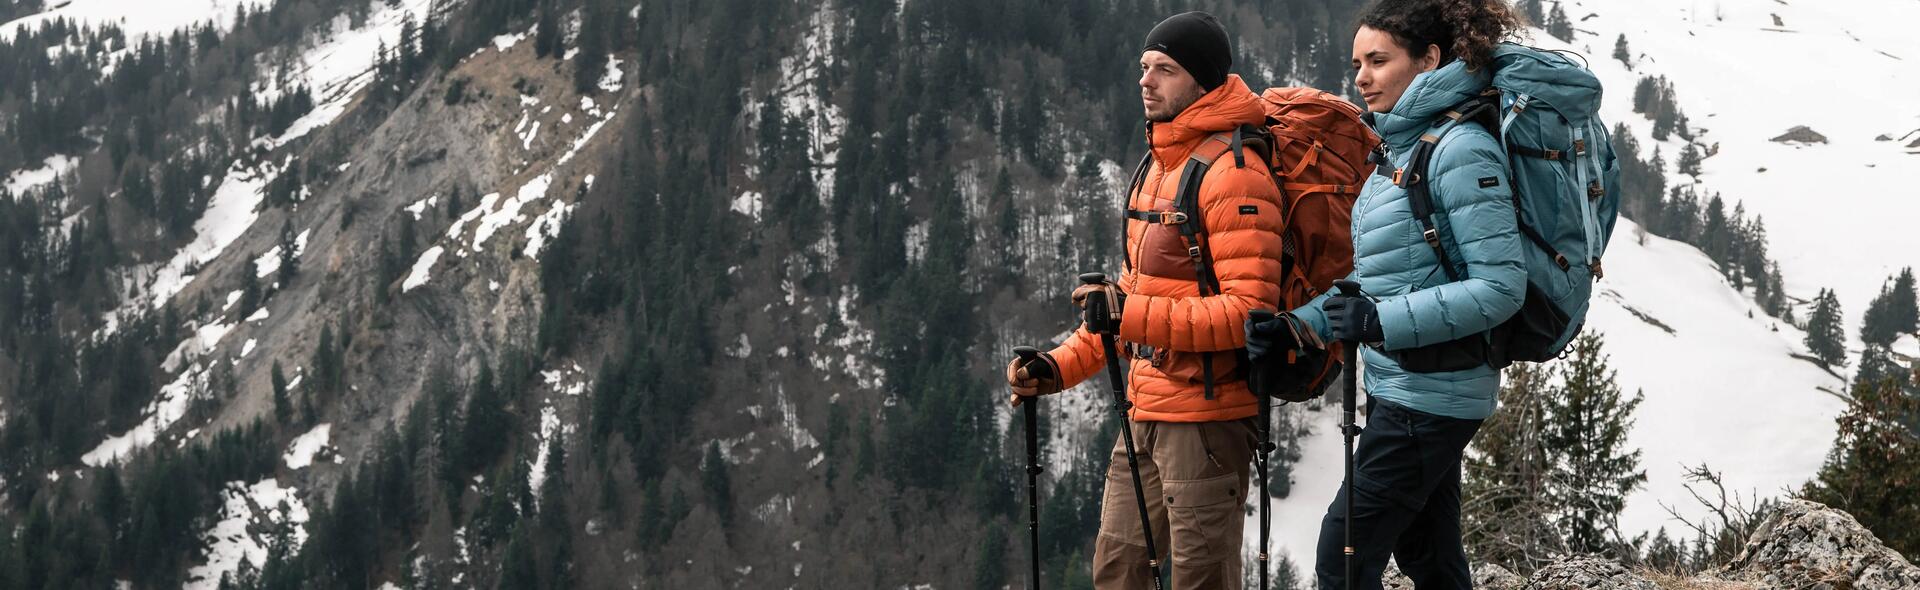 kobieta i mężczyzna z plecakami turystycznymi na plecach  trzymający kijki trekkingowe stojąc w górach